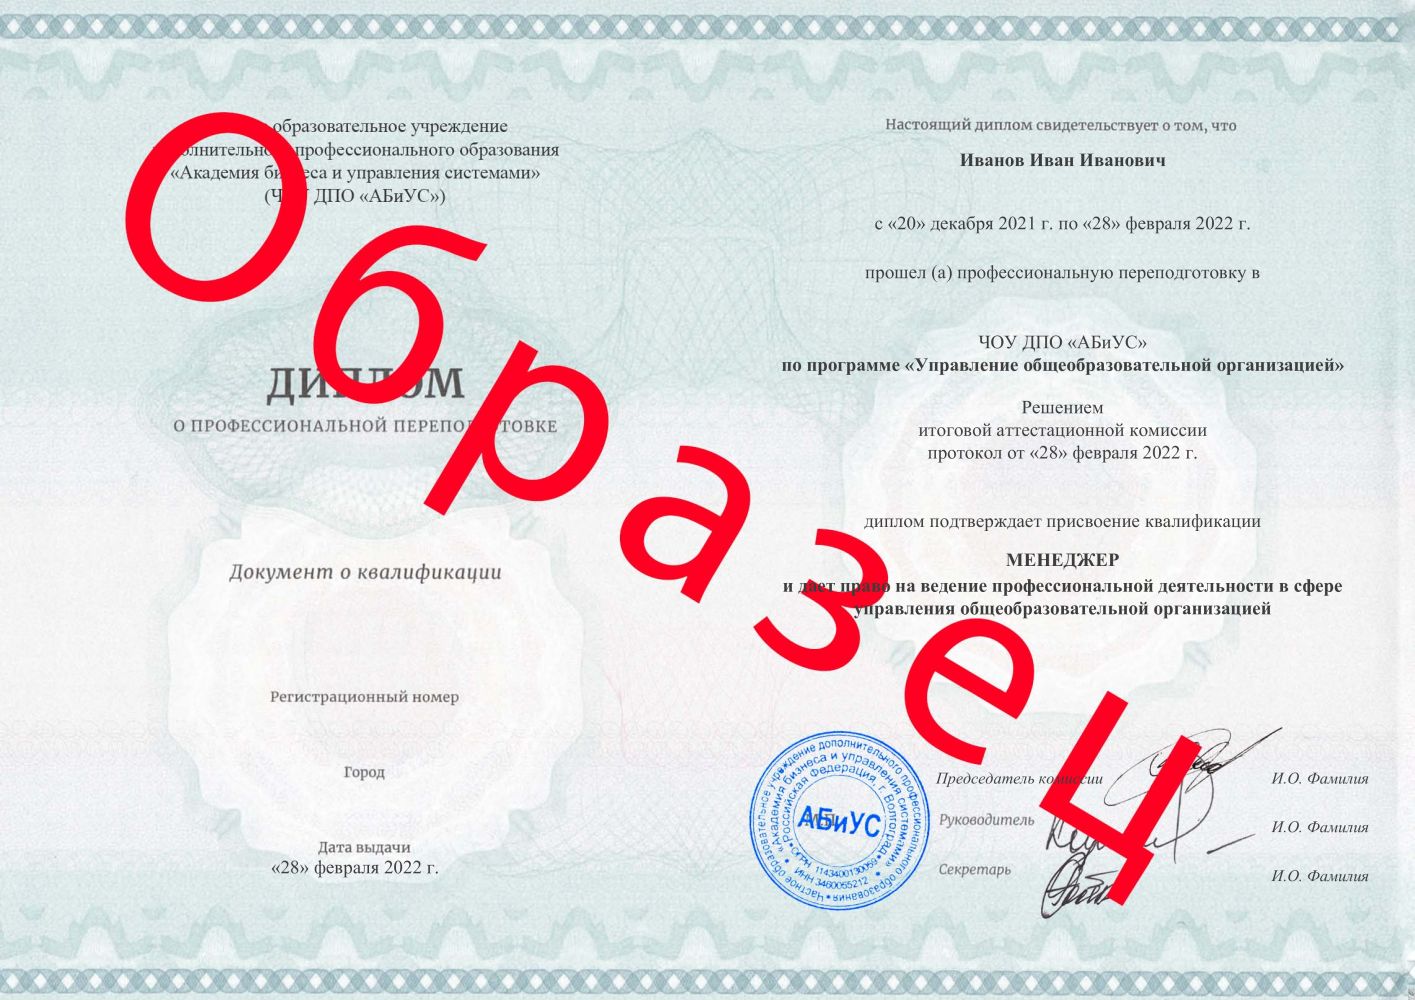 Диплом Управление общеобразовательной организацией 260 часов 8200 руб.